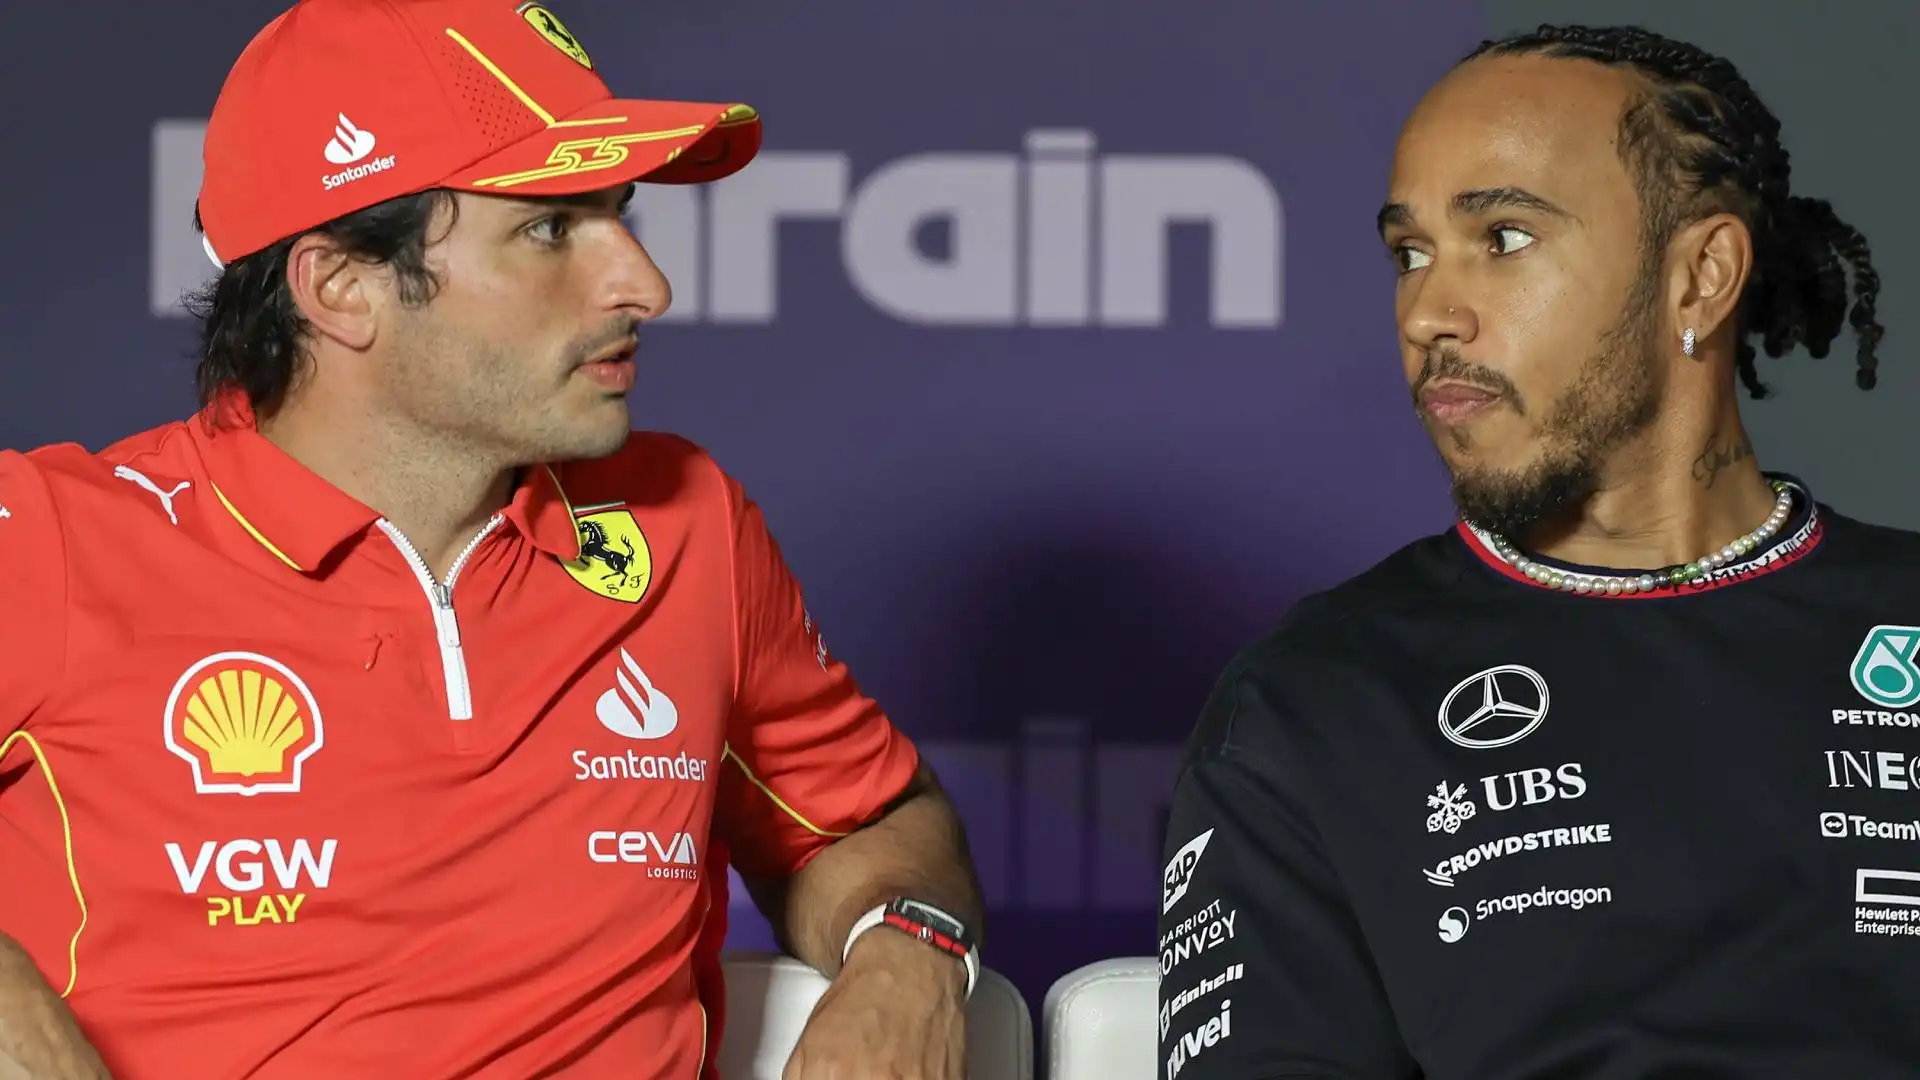 "Non credo proprio che l'arrivo di Hamilton sia stata la mossa giusta per la Ferrari", ha detto in un'intervista all'Herald Sun